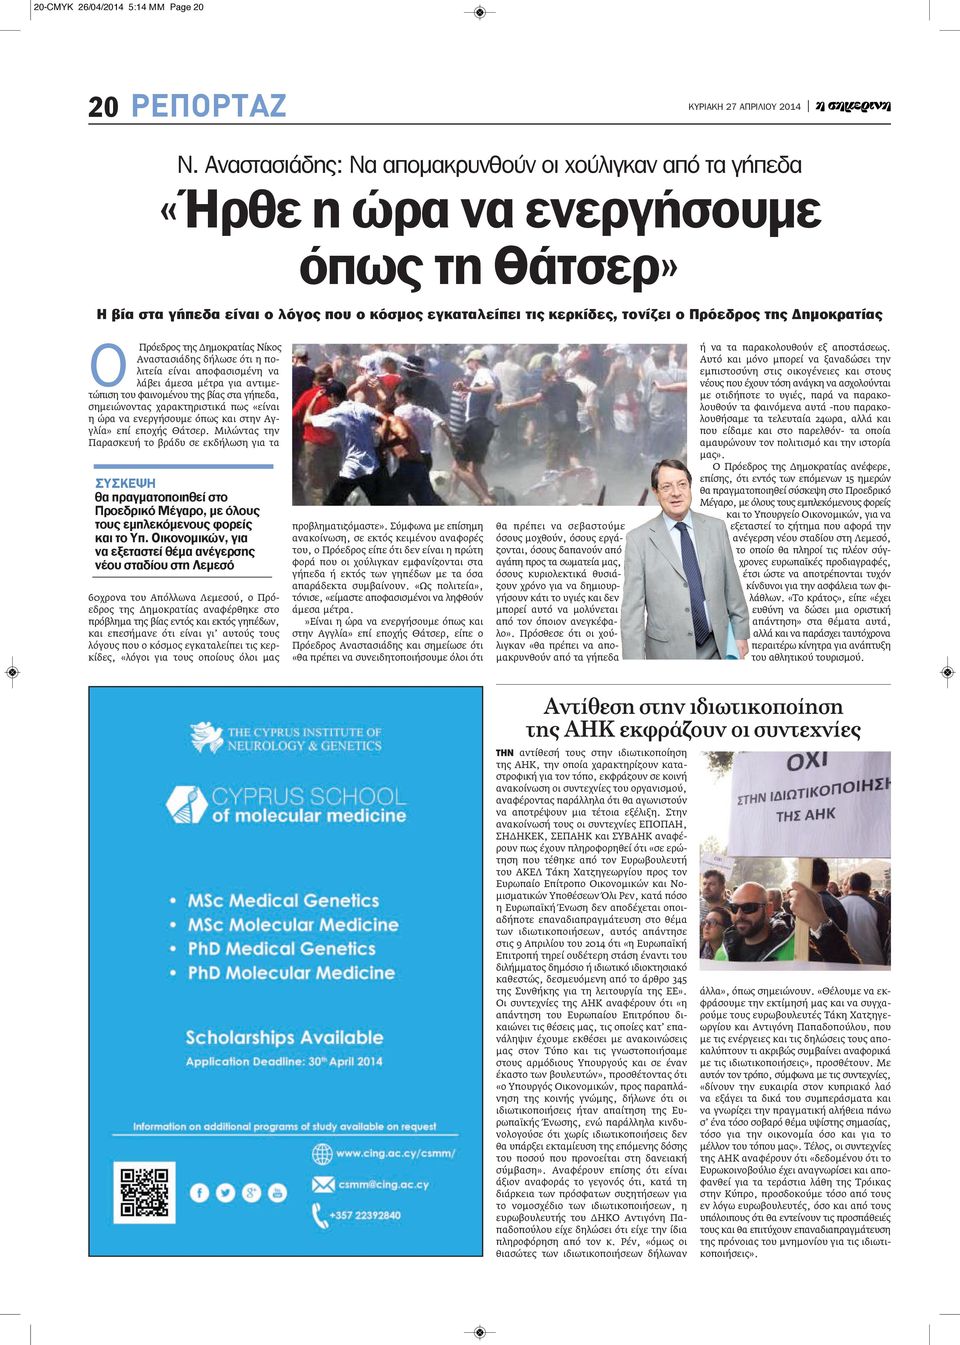 Δημοκρατίας Ο Πρόεδρος της Δημοκρατίας Νίκος Αναστασιάδης δήλωσε ότι η πολιτεία είναι αποφασισμένη να λάβει άμεσα μέτρα για αντιμετώπιση του φαινομένου της βίας στα γήπεδα, σημειώνοντας